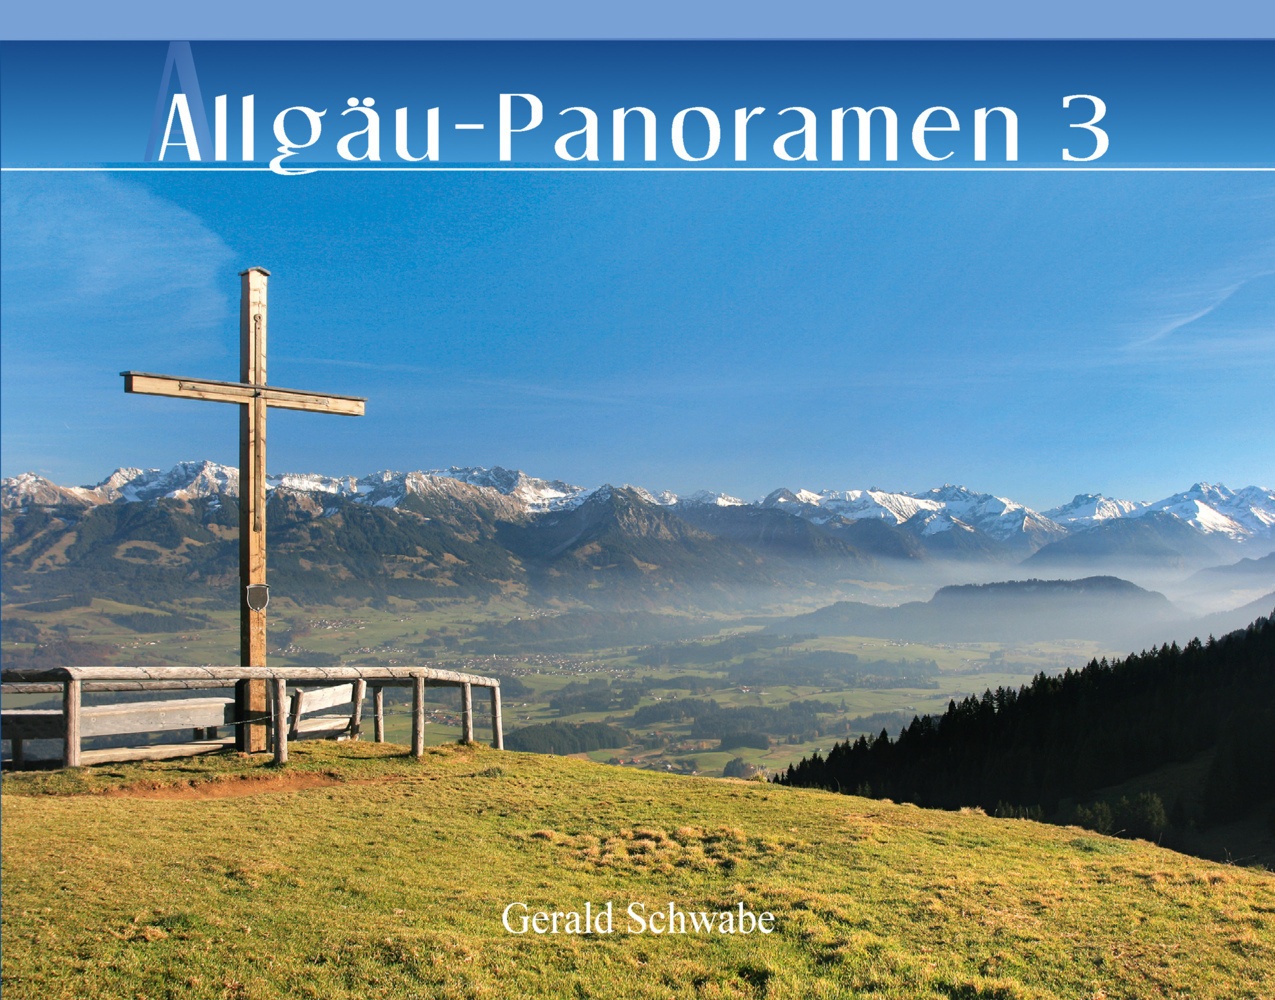 Allgäu-Panoramen 3 - Gerald Schwabe  Gebunden